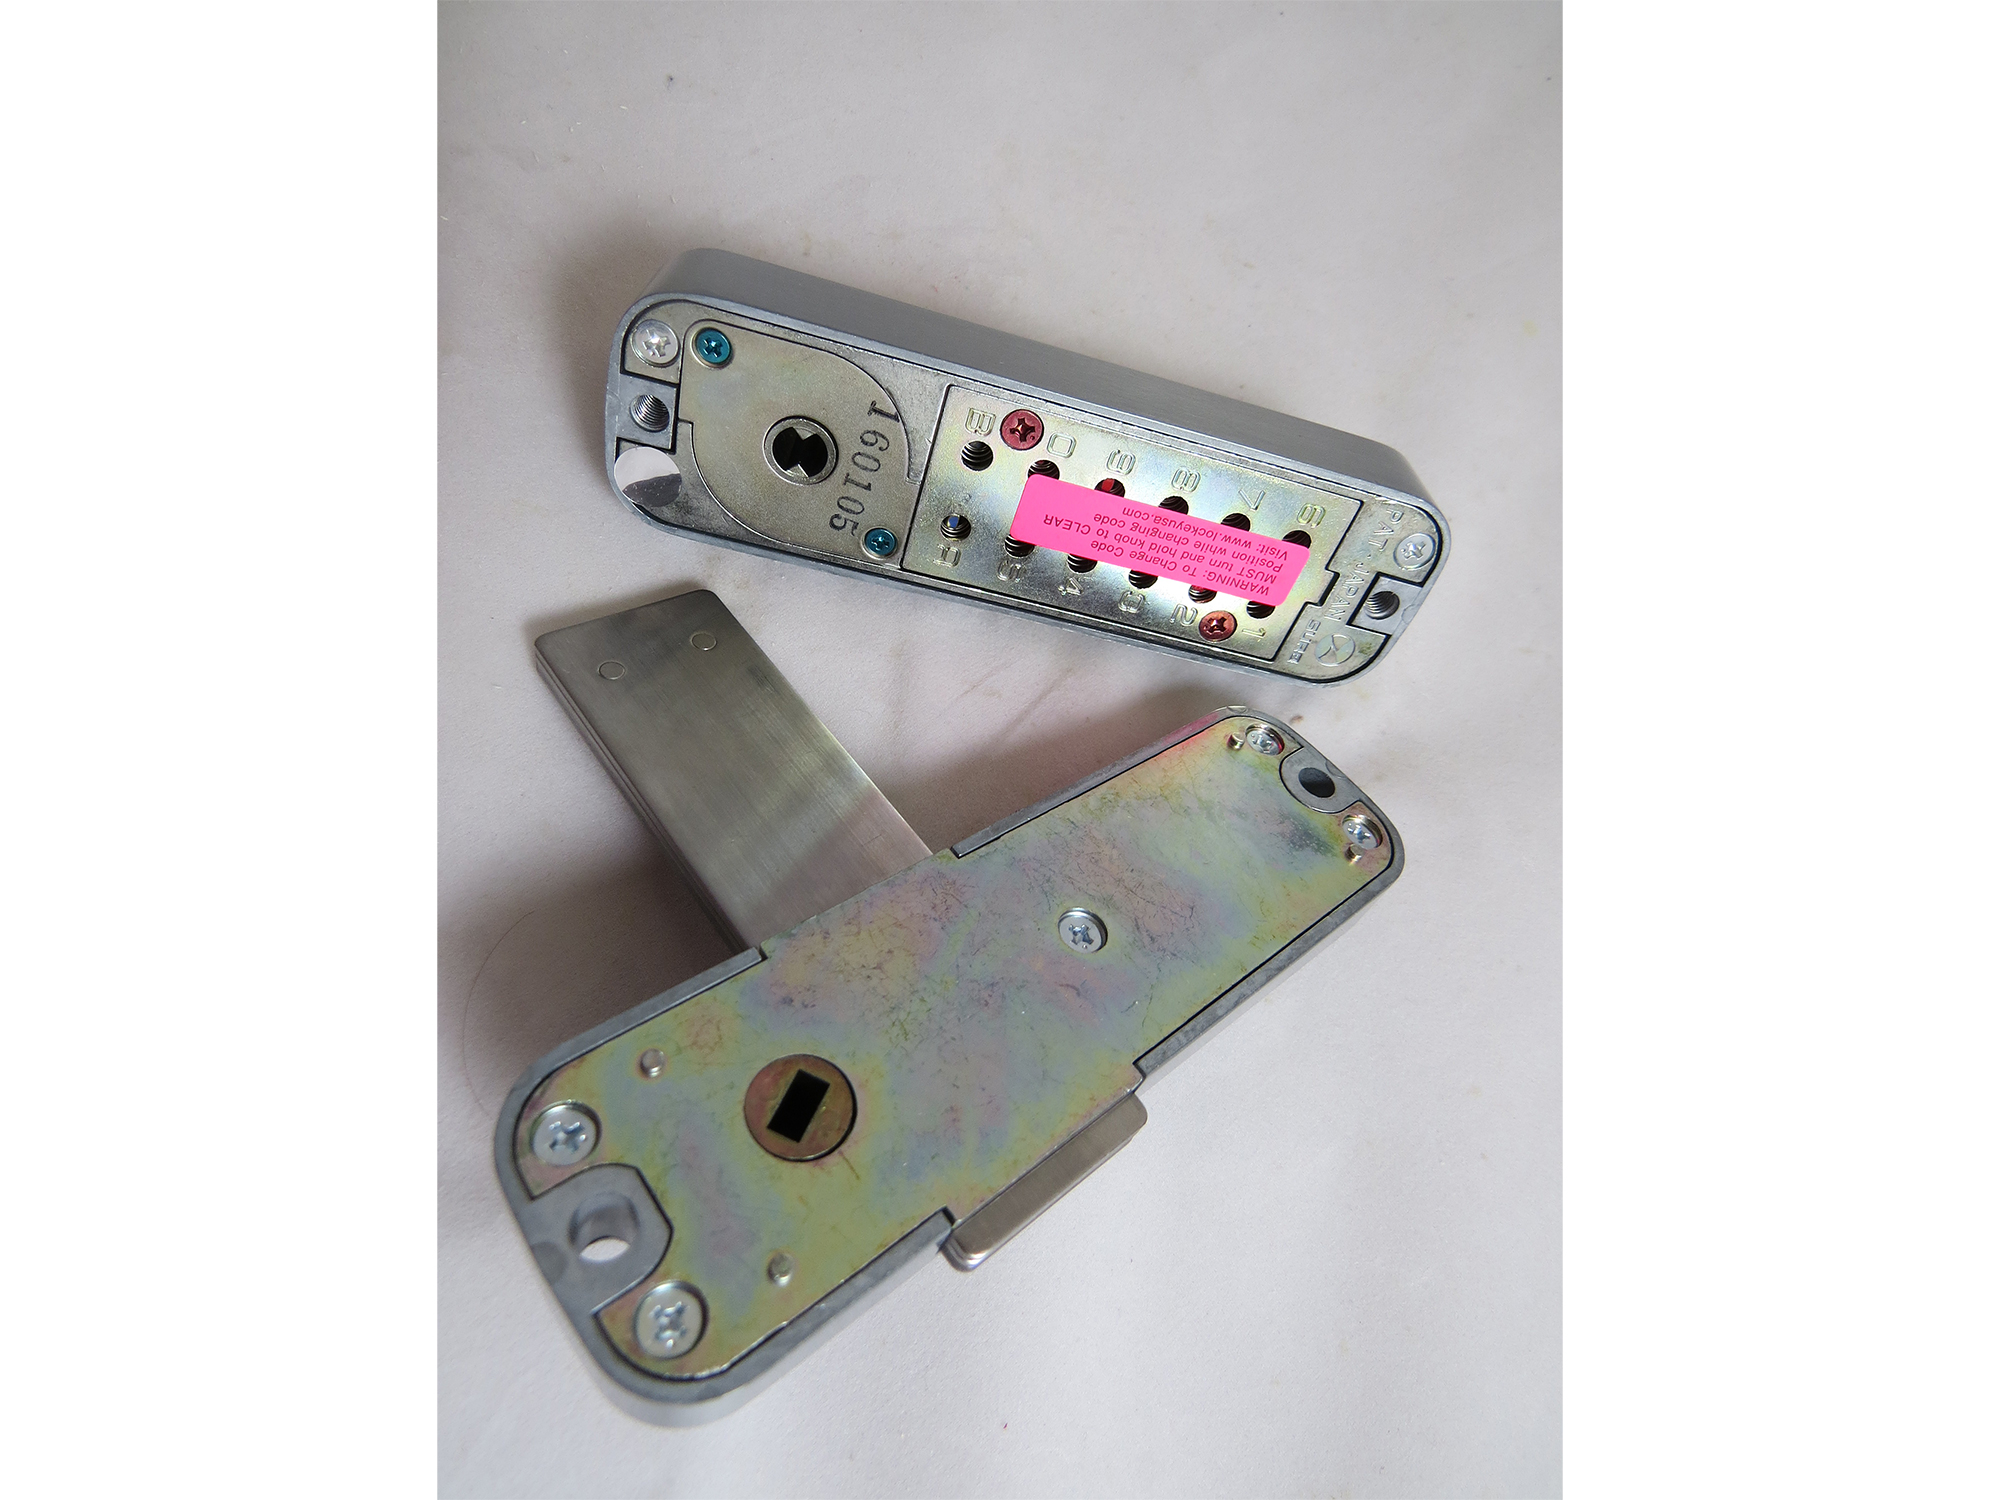 Lockey M220 Surface-Mount Slide-Bar Deadbolt Keypad Lock